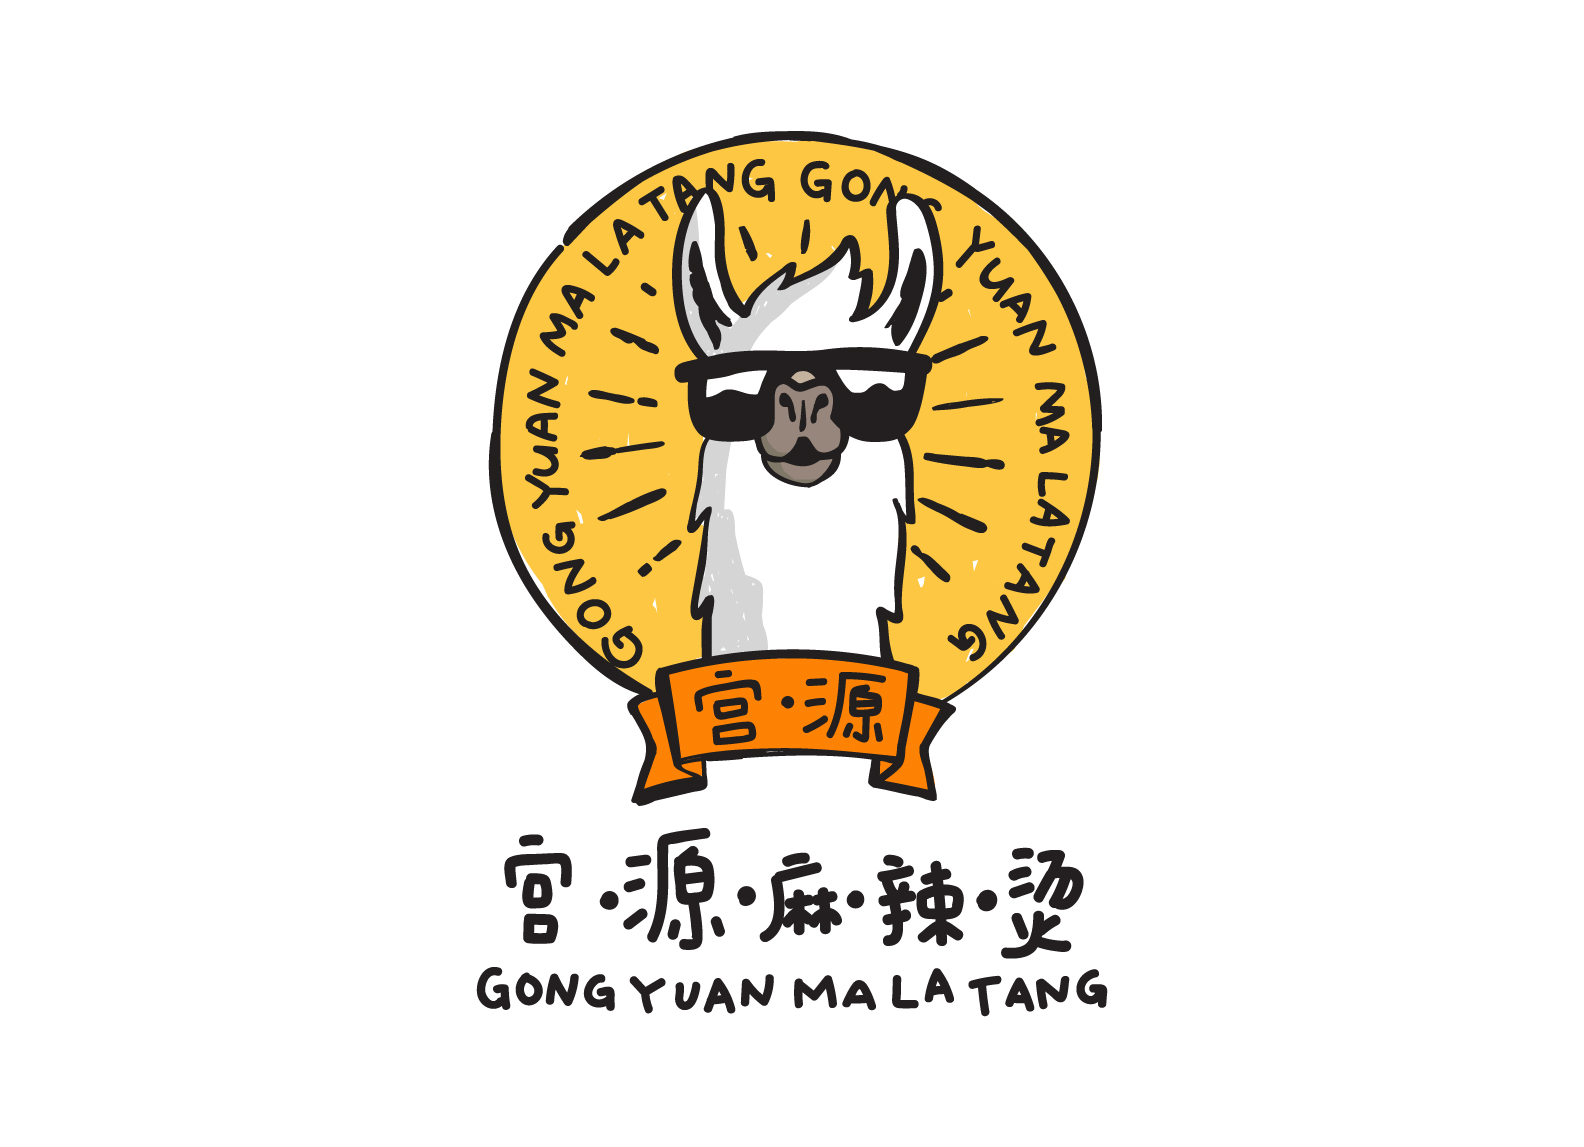 Gong Yuan Ma La Tang